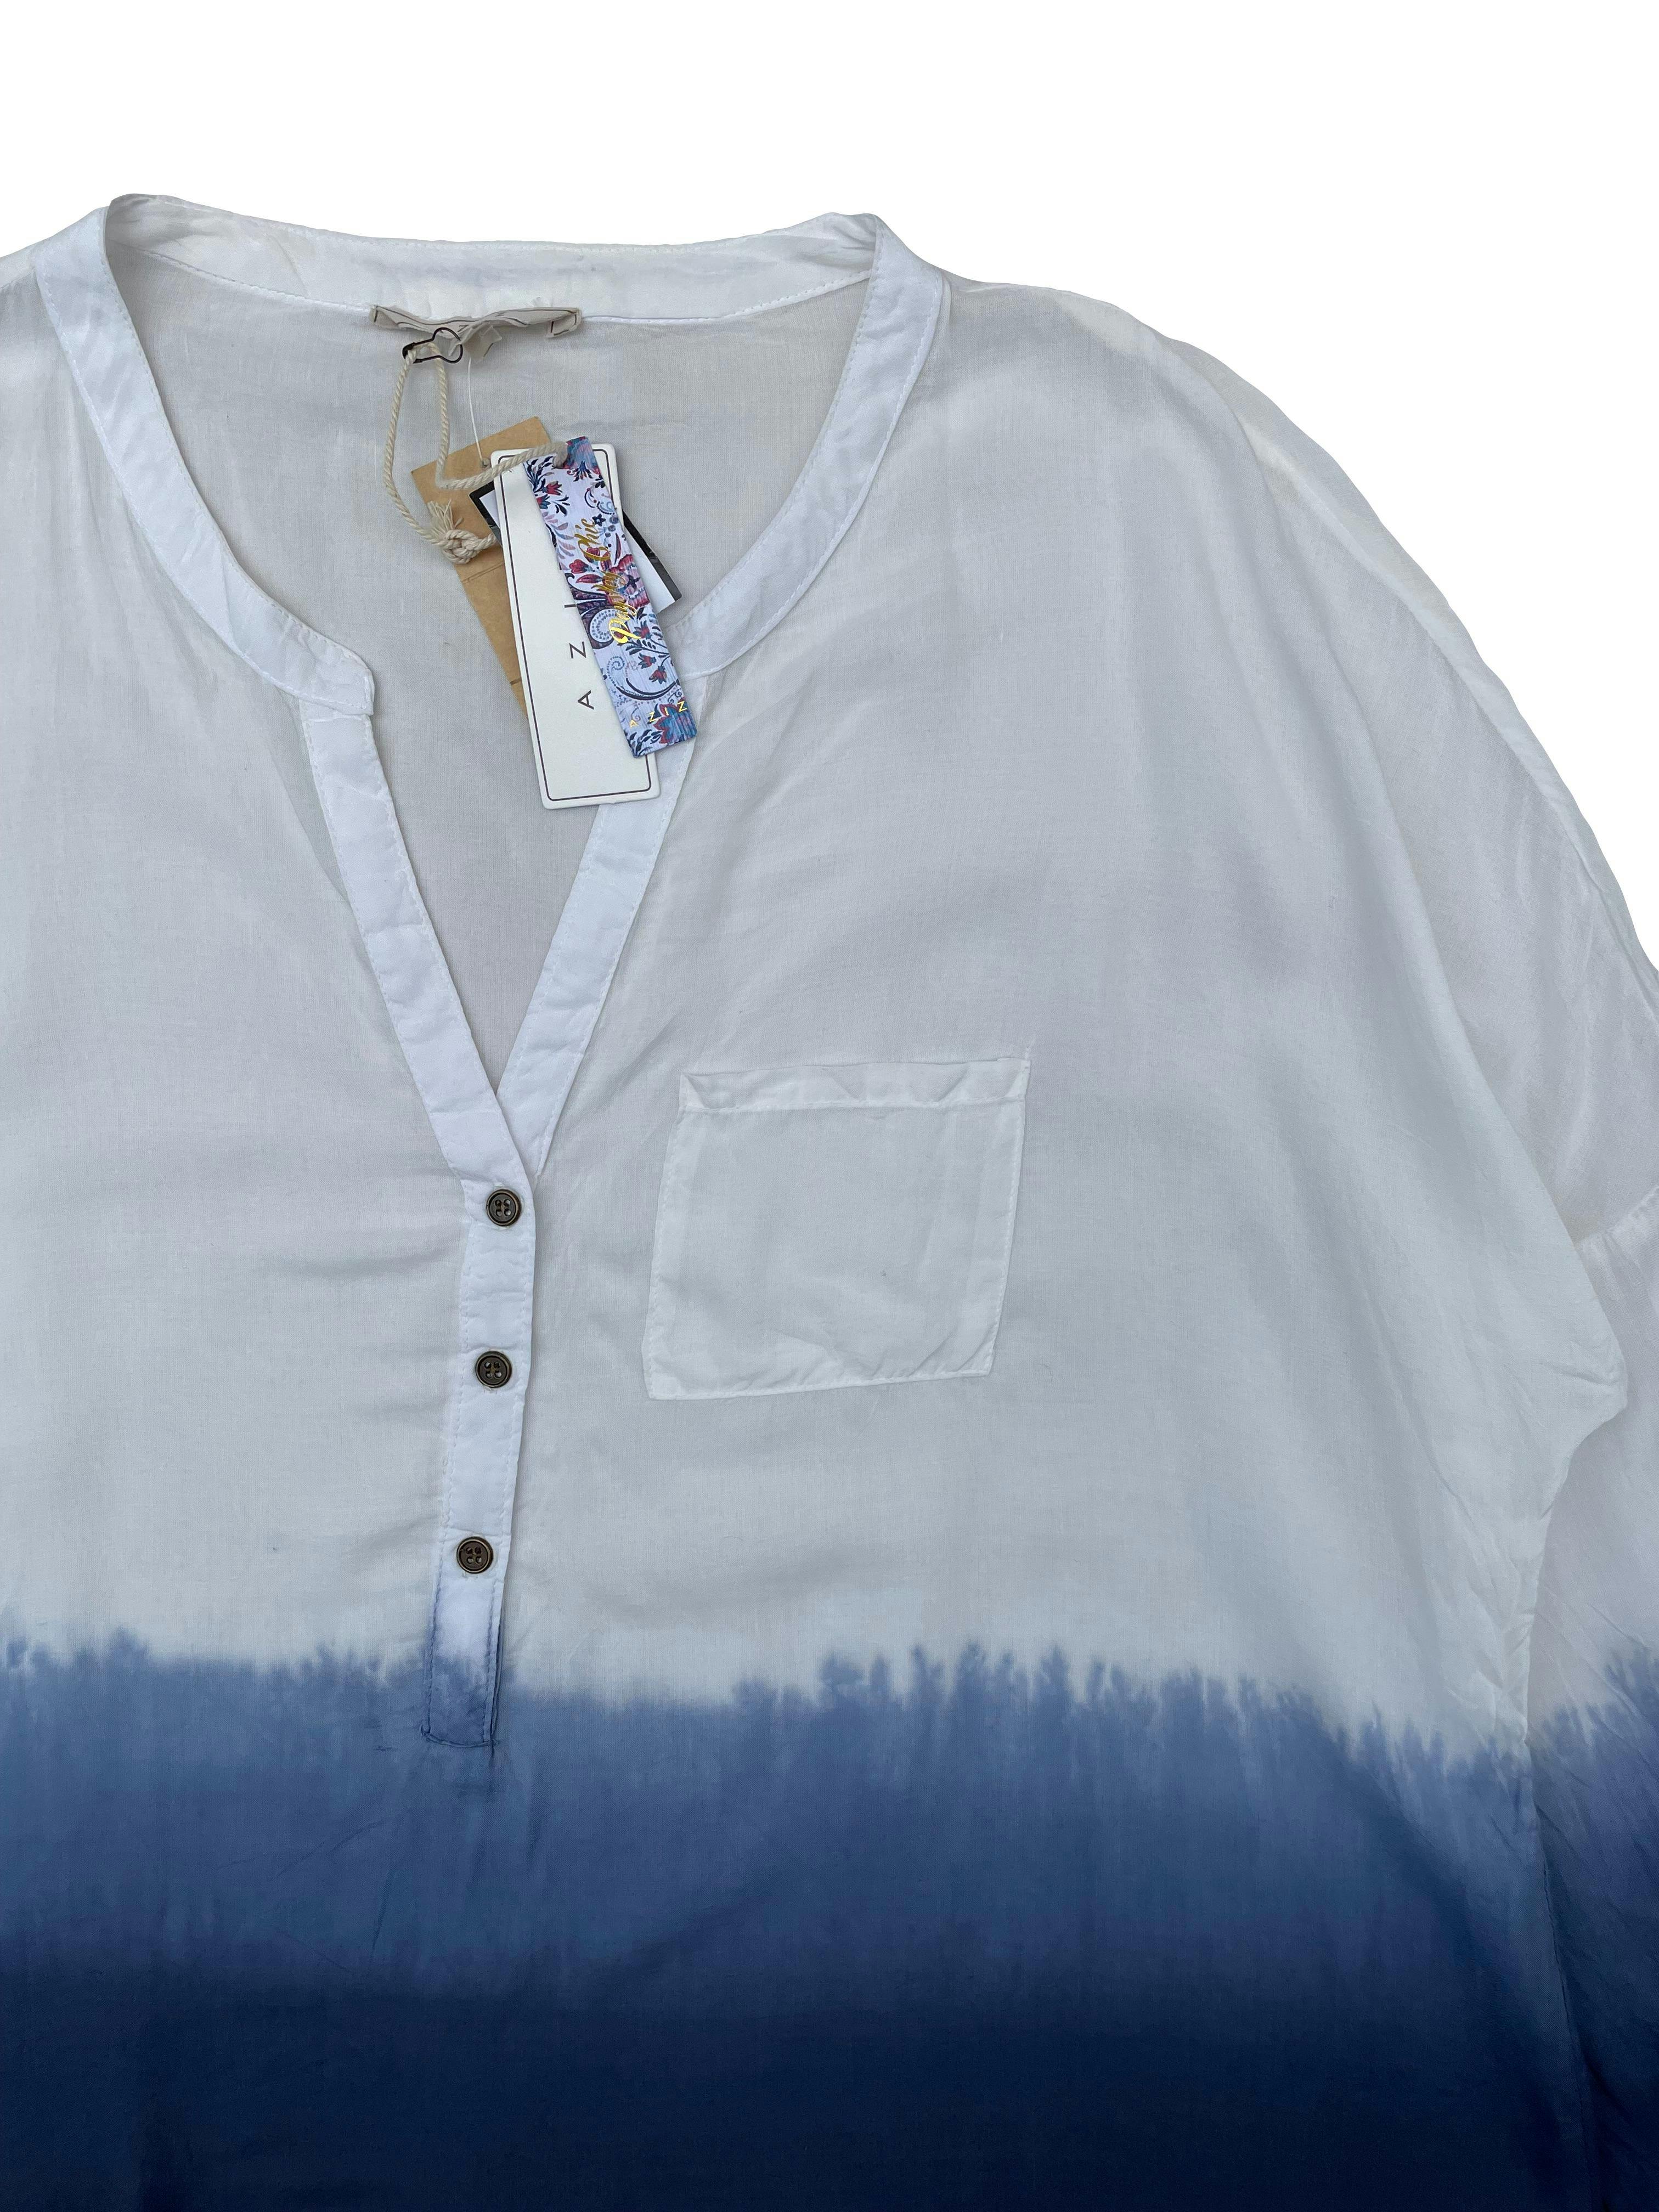 Blusa Aziz blanca en degradé azul, mangas regulables con botón, tela fresca. Busto: 120cm, Largo: 70cm. Nueva con etiqueta